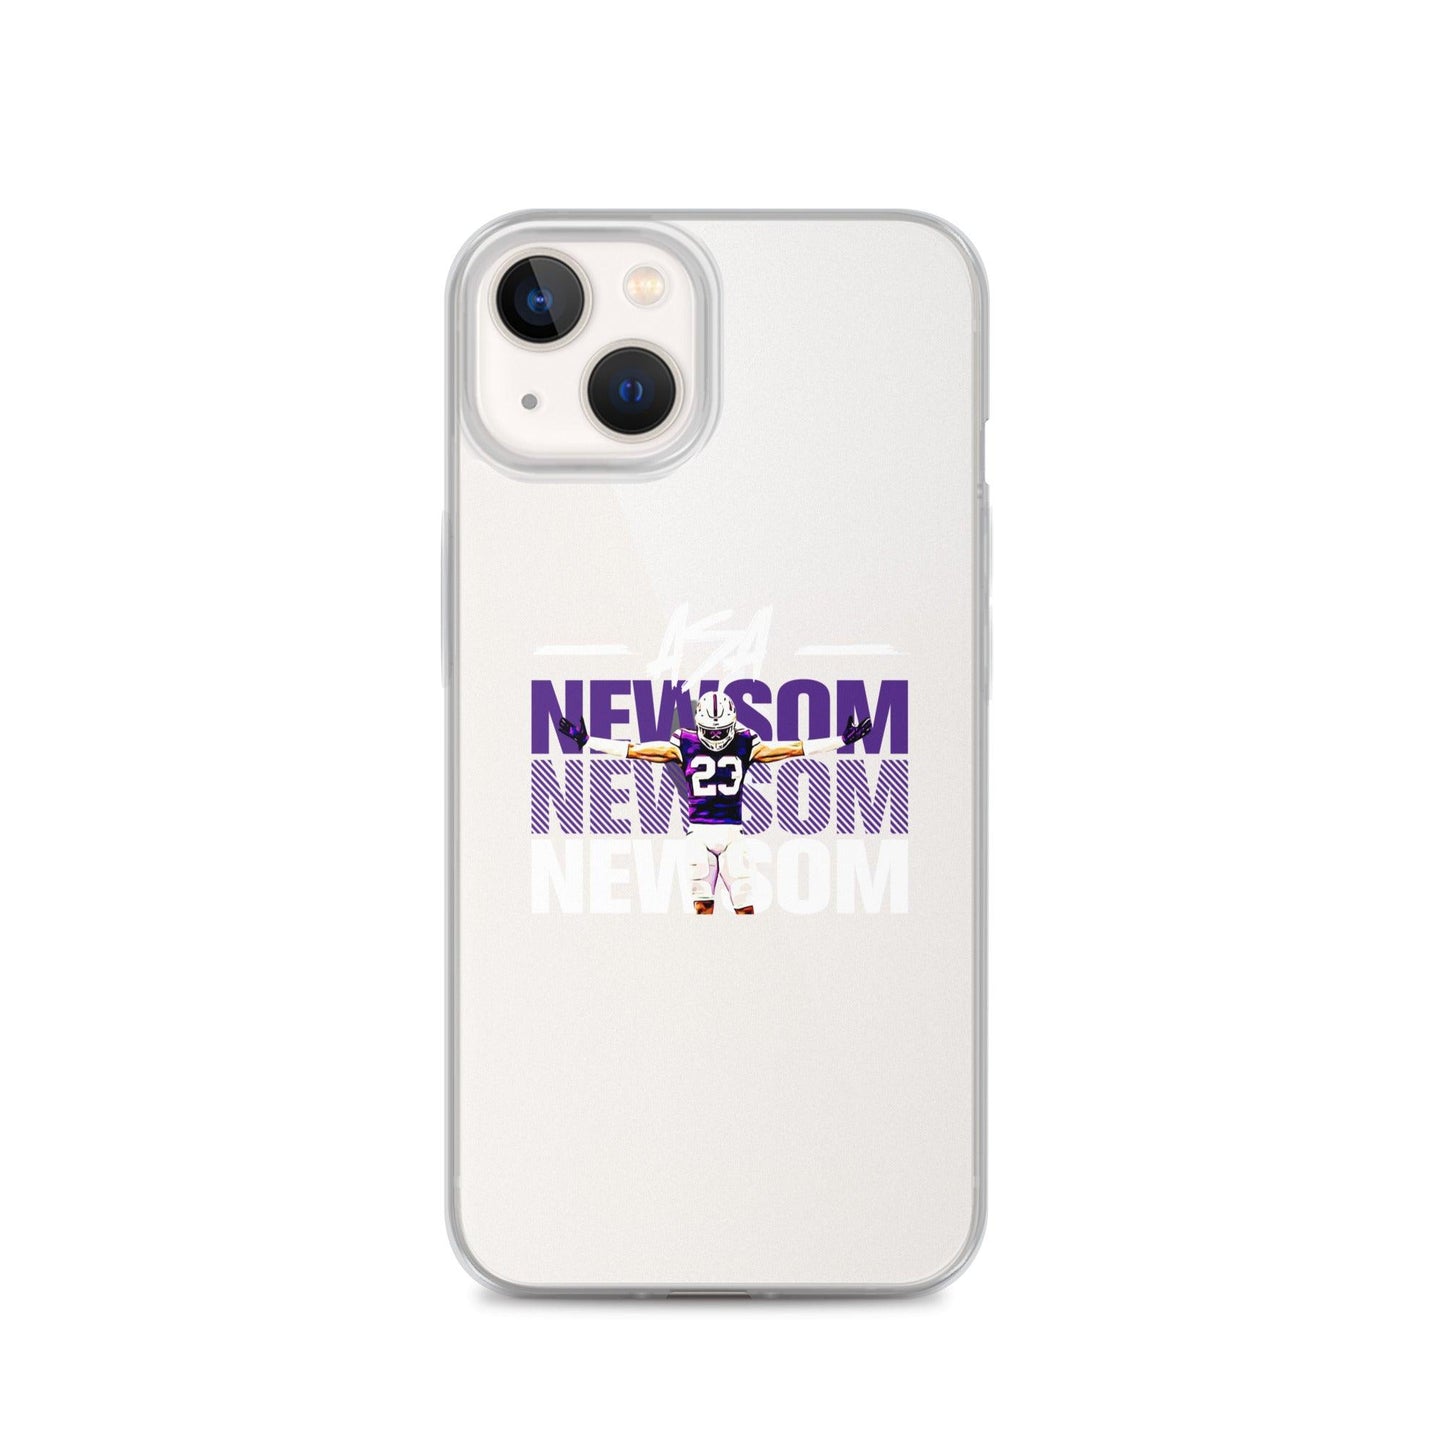 Asa Newsom "Gameday" iPhone® - Fan Arch